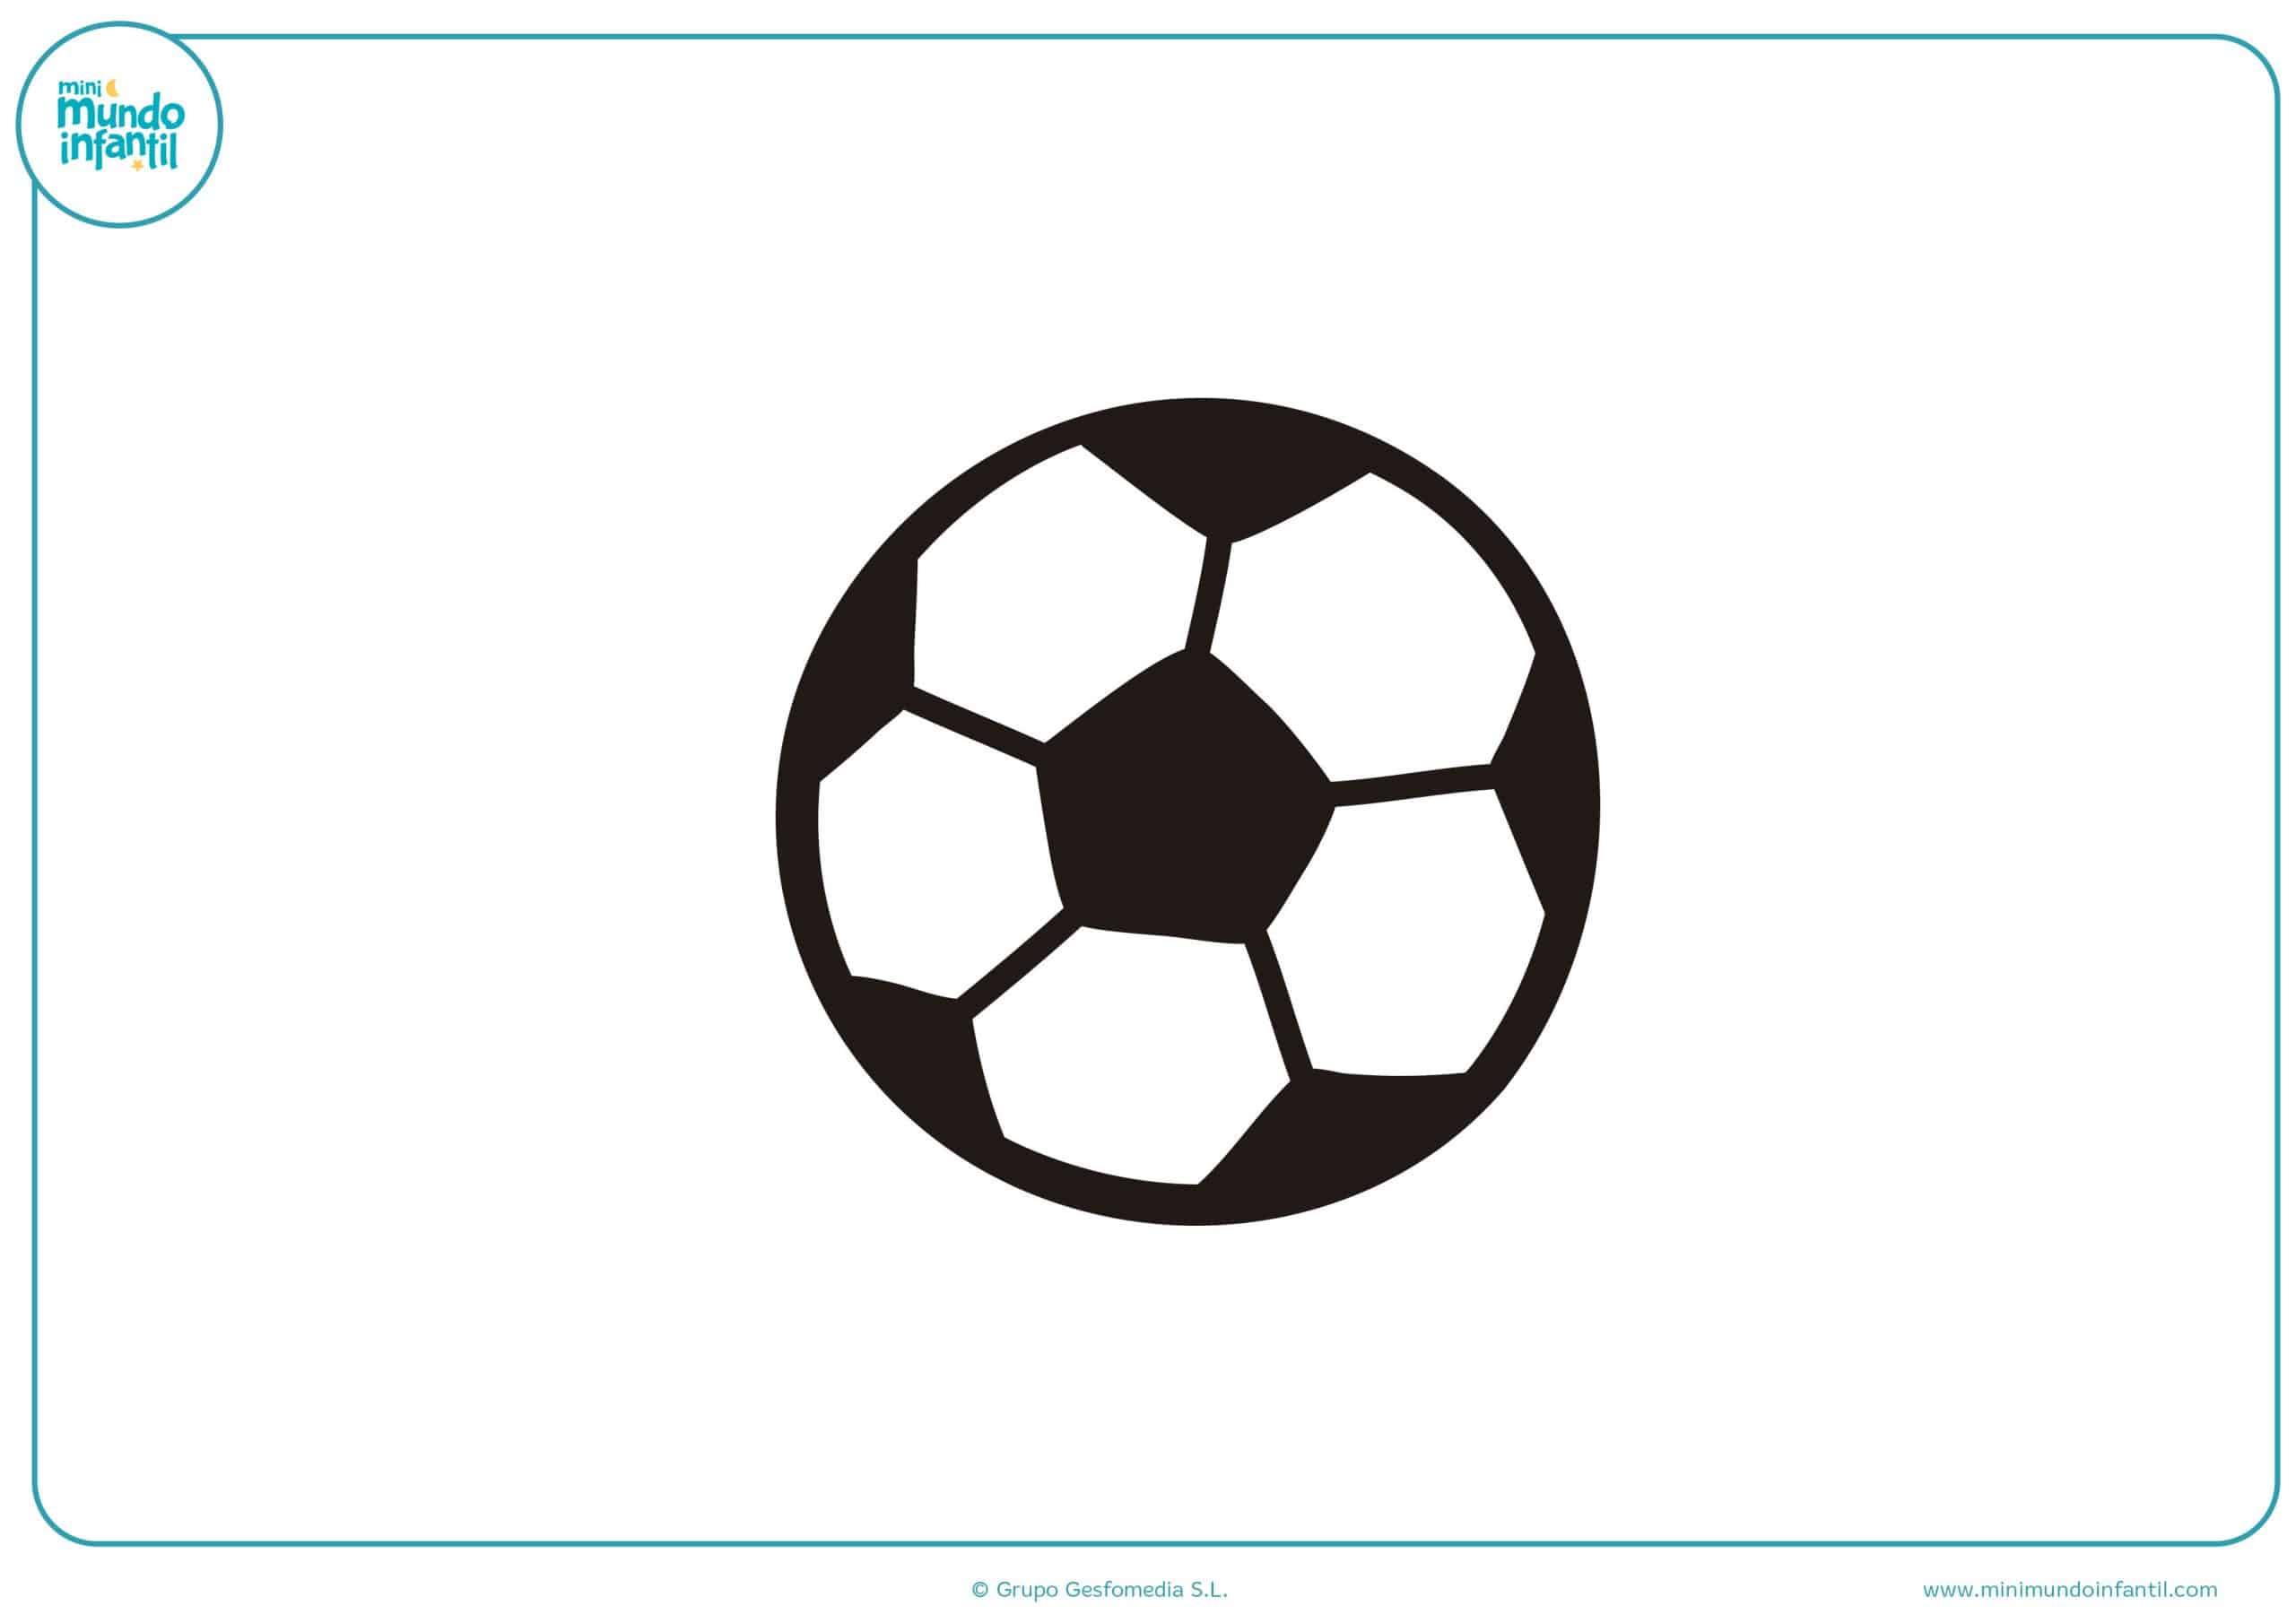 Los Mejores Dibujos De Futbol Para Colorear E Imprimir Download as pdf, txt or read online from scribd. dibujos de futbol para colorear e imprimir